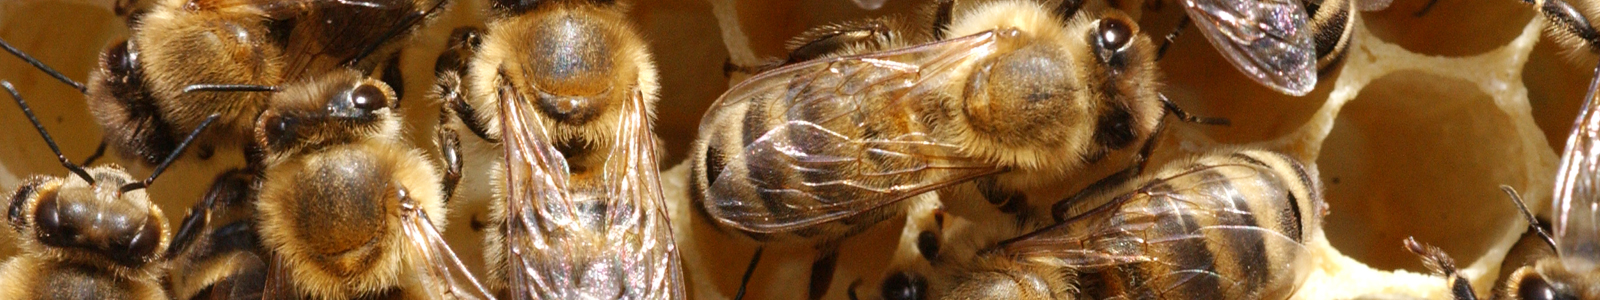 Bienen auf Bienenwabe ©DLR